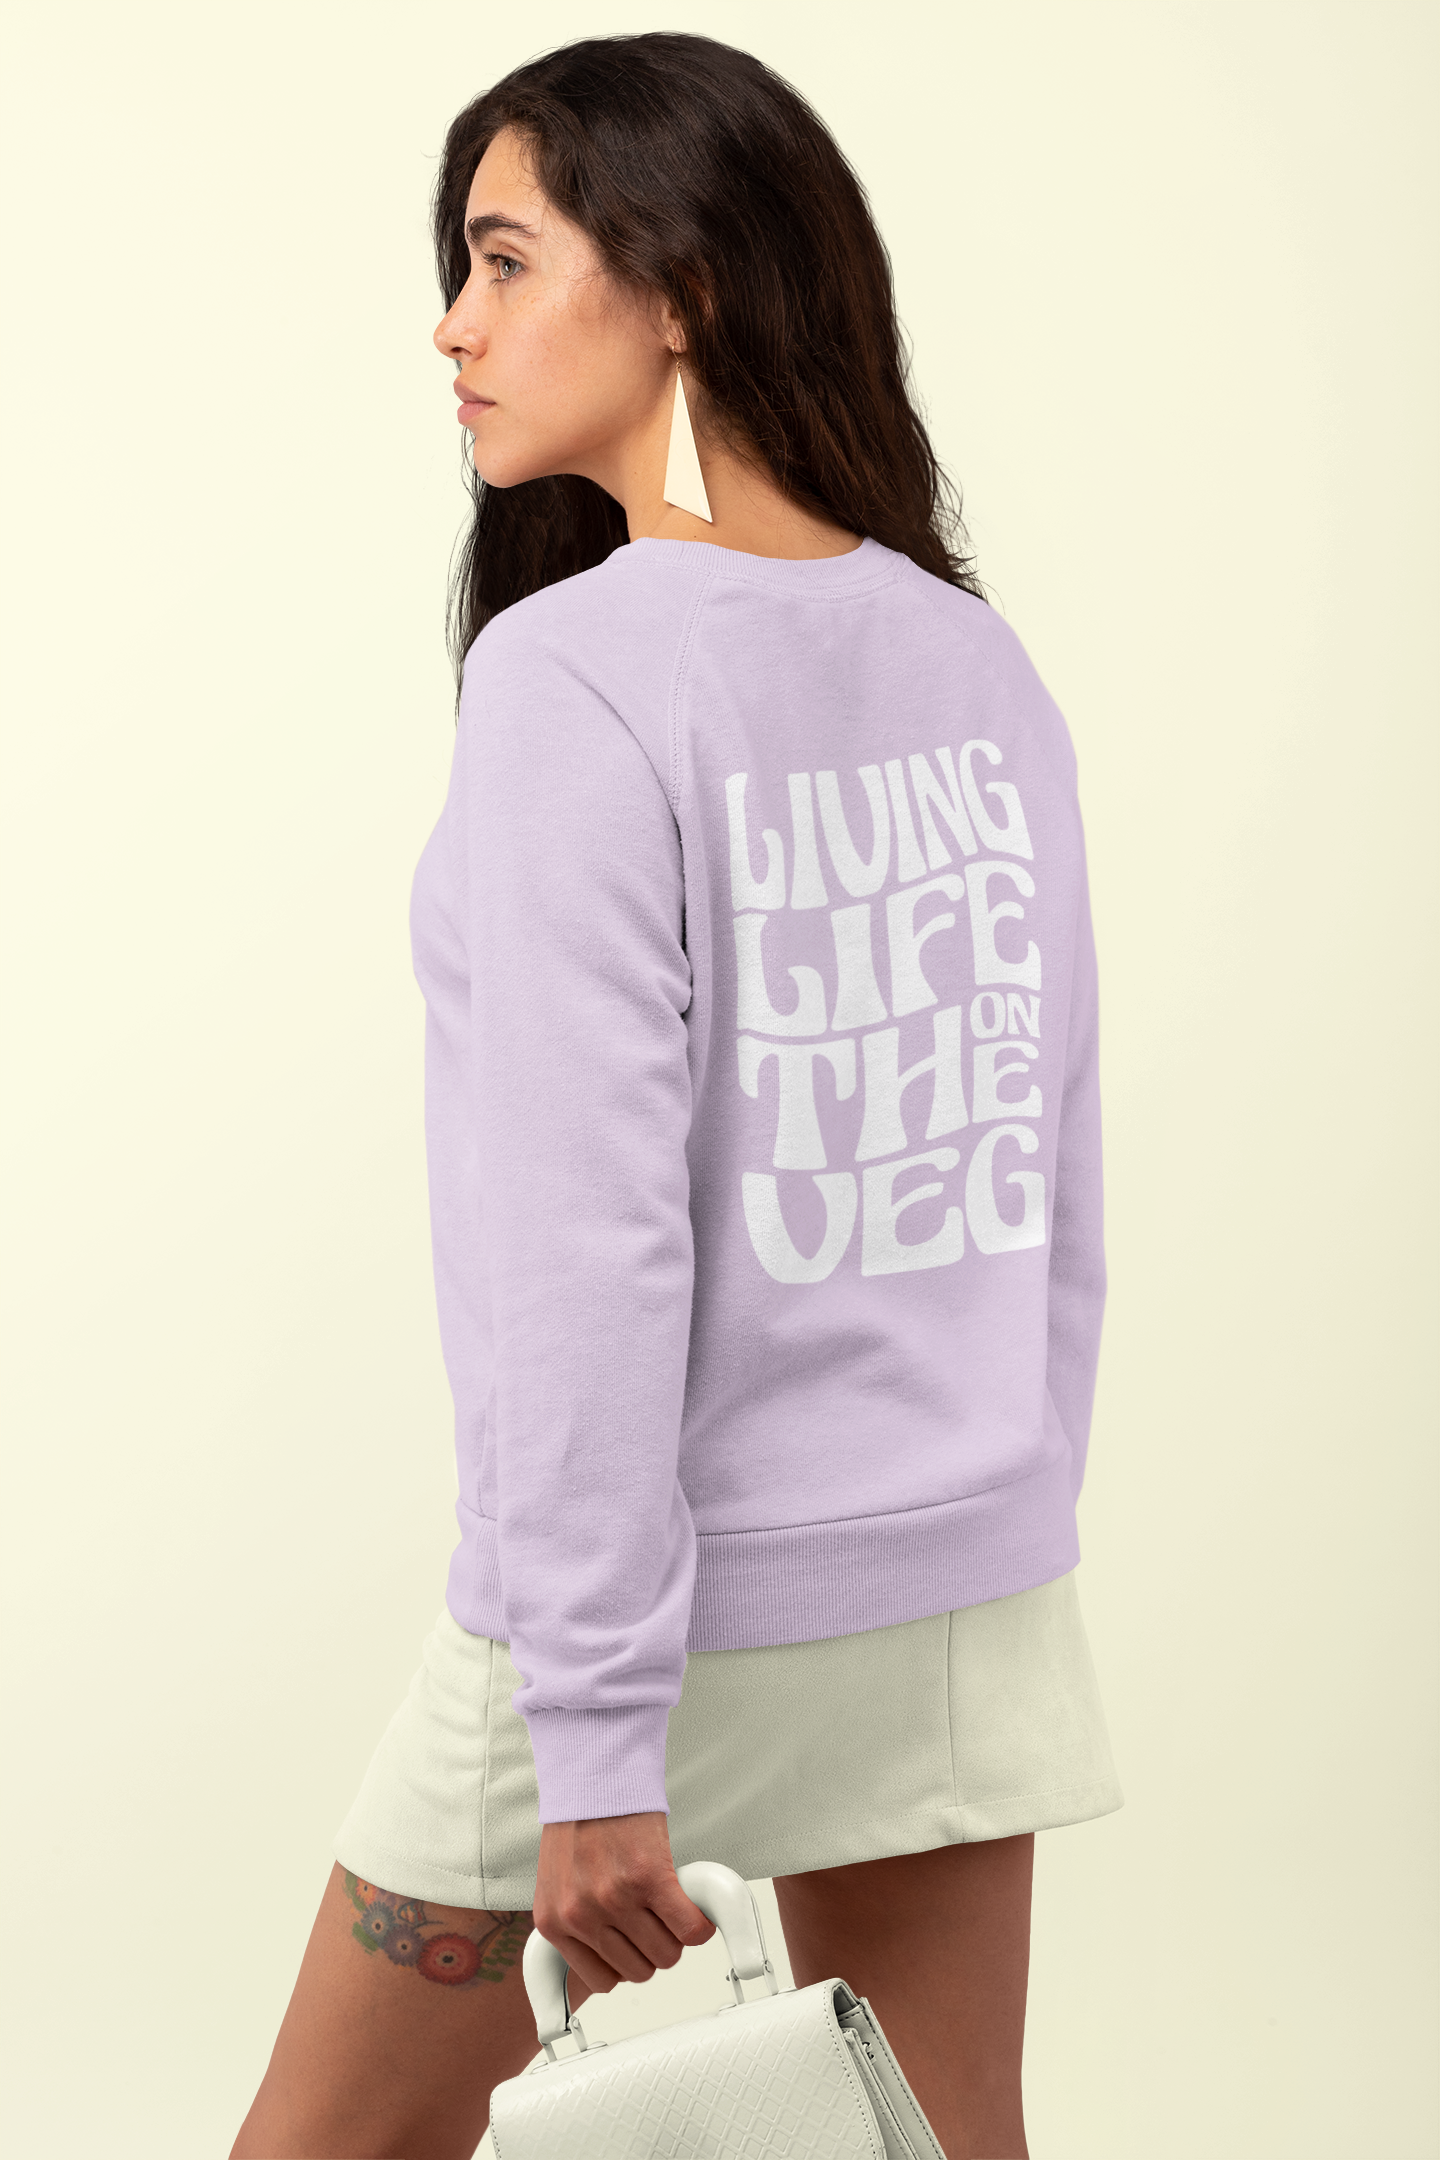 On The Veg Sweater Women/Unisex